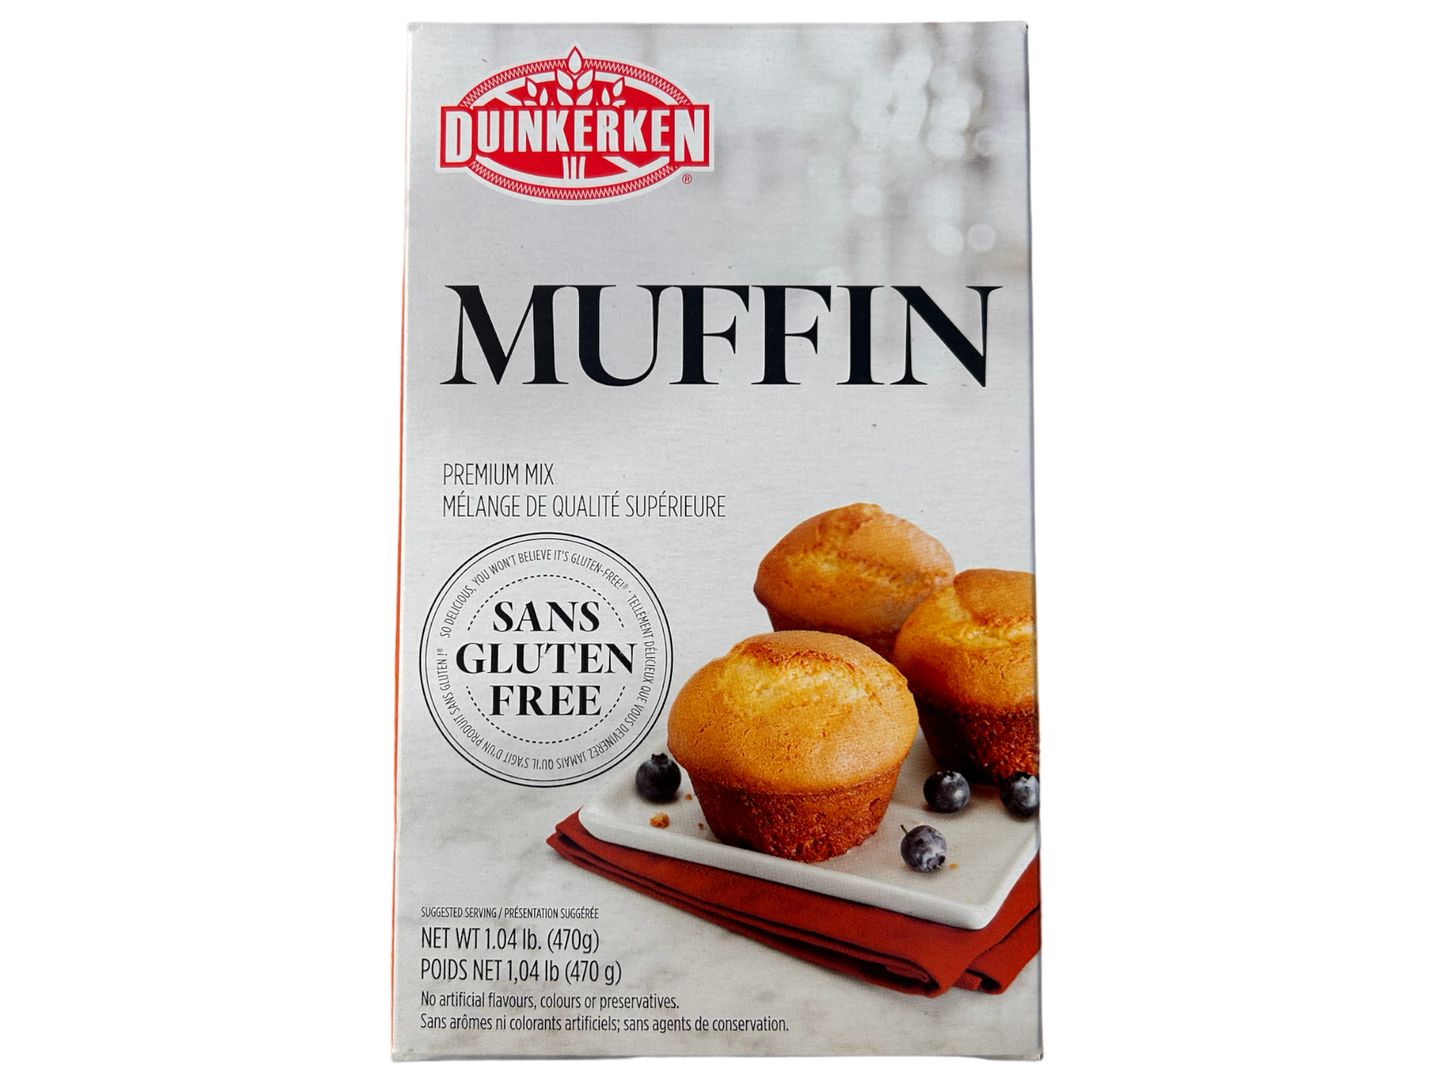 Muffin- Duinkerken - 470g